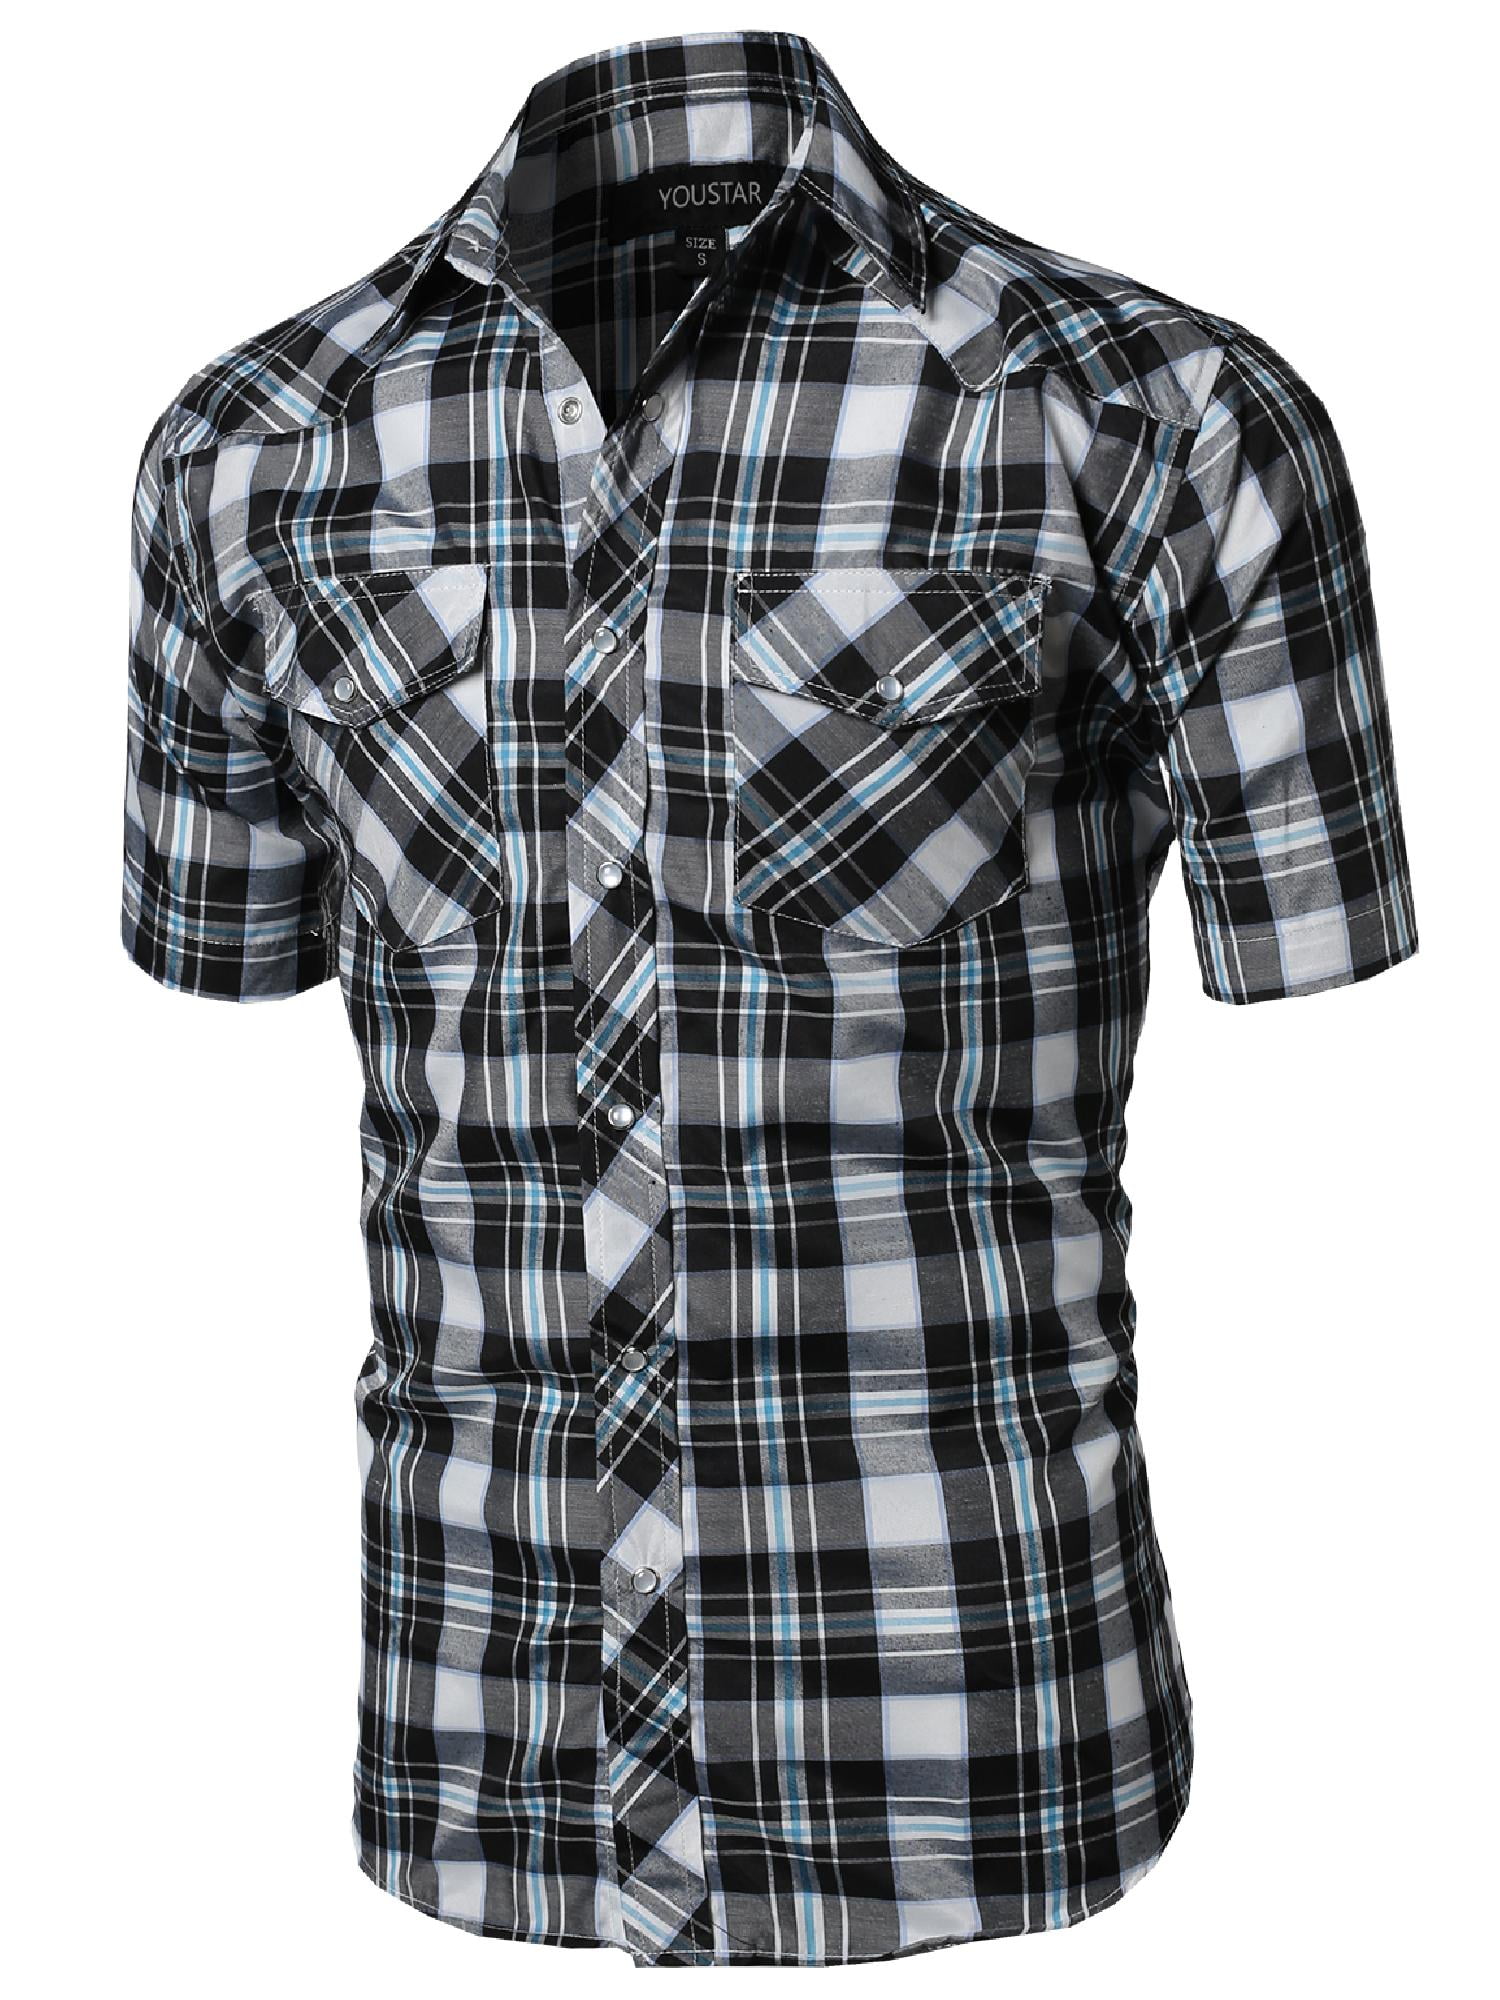 FashionOutfit Men's Western Casual Button Down Shirt - Walmart.com